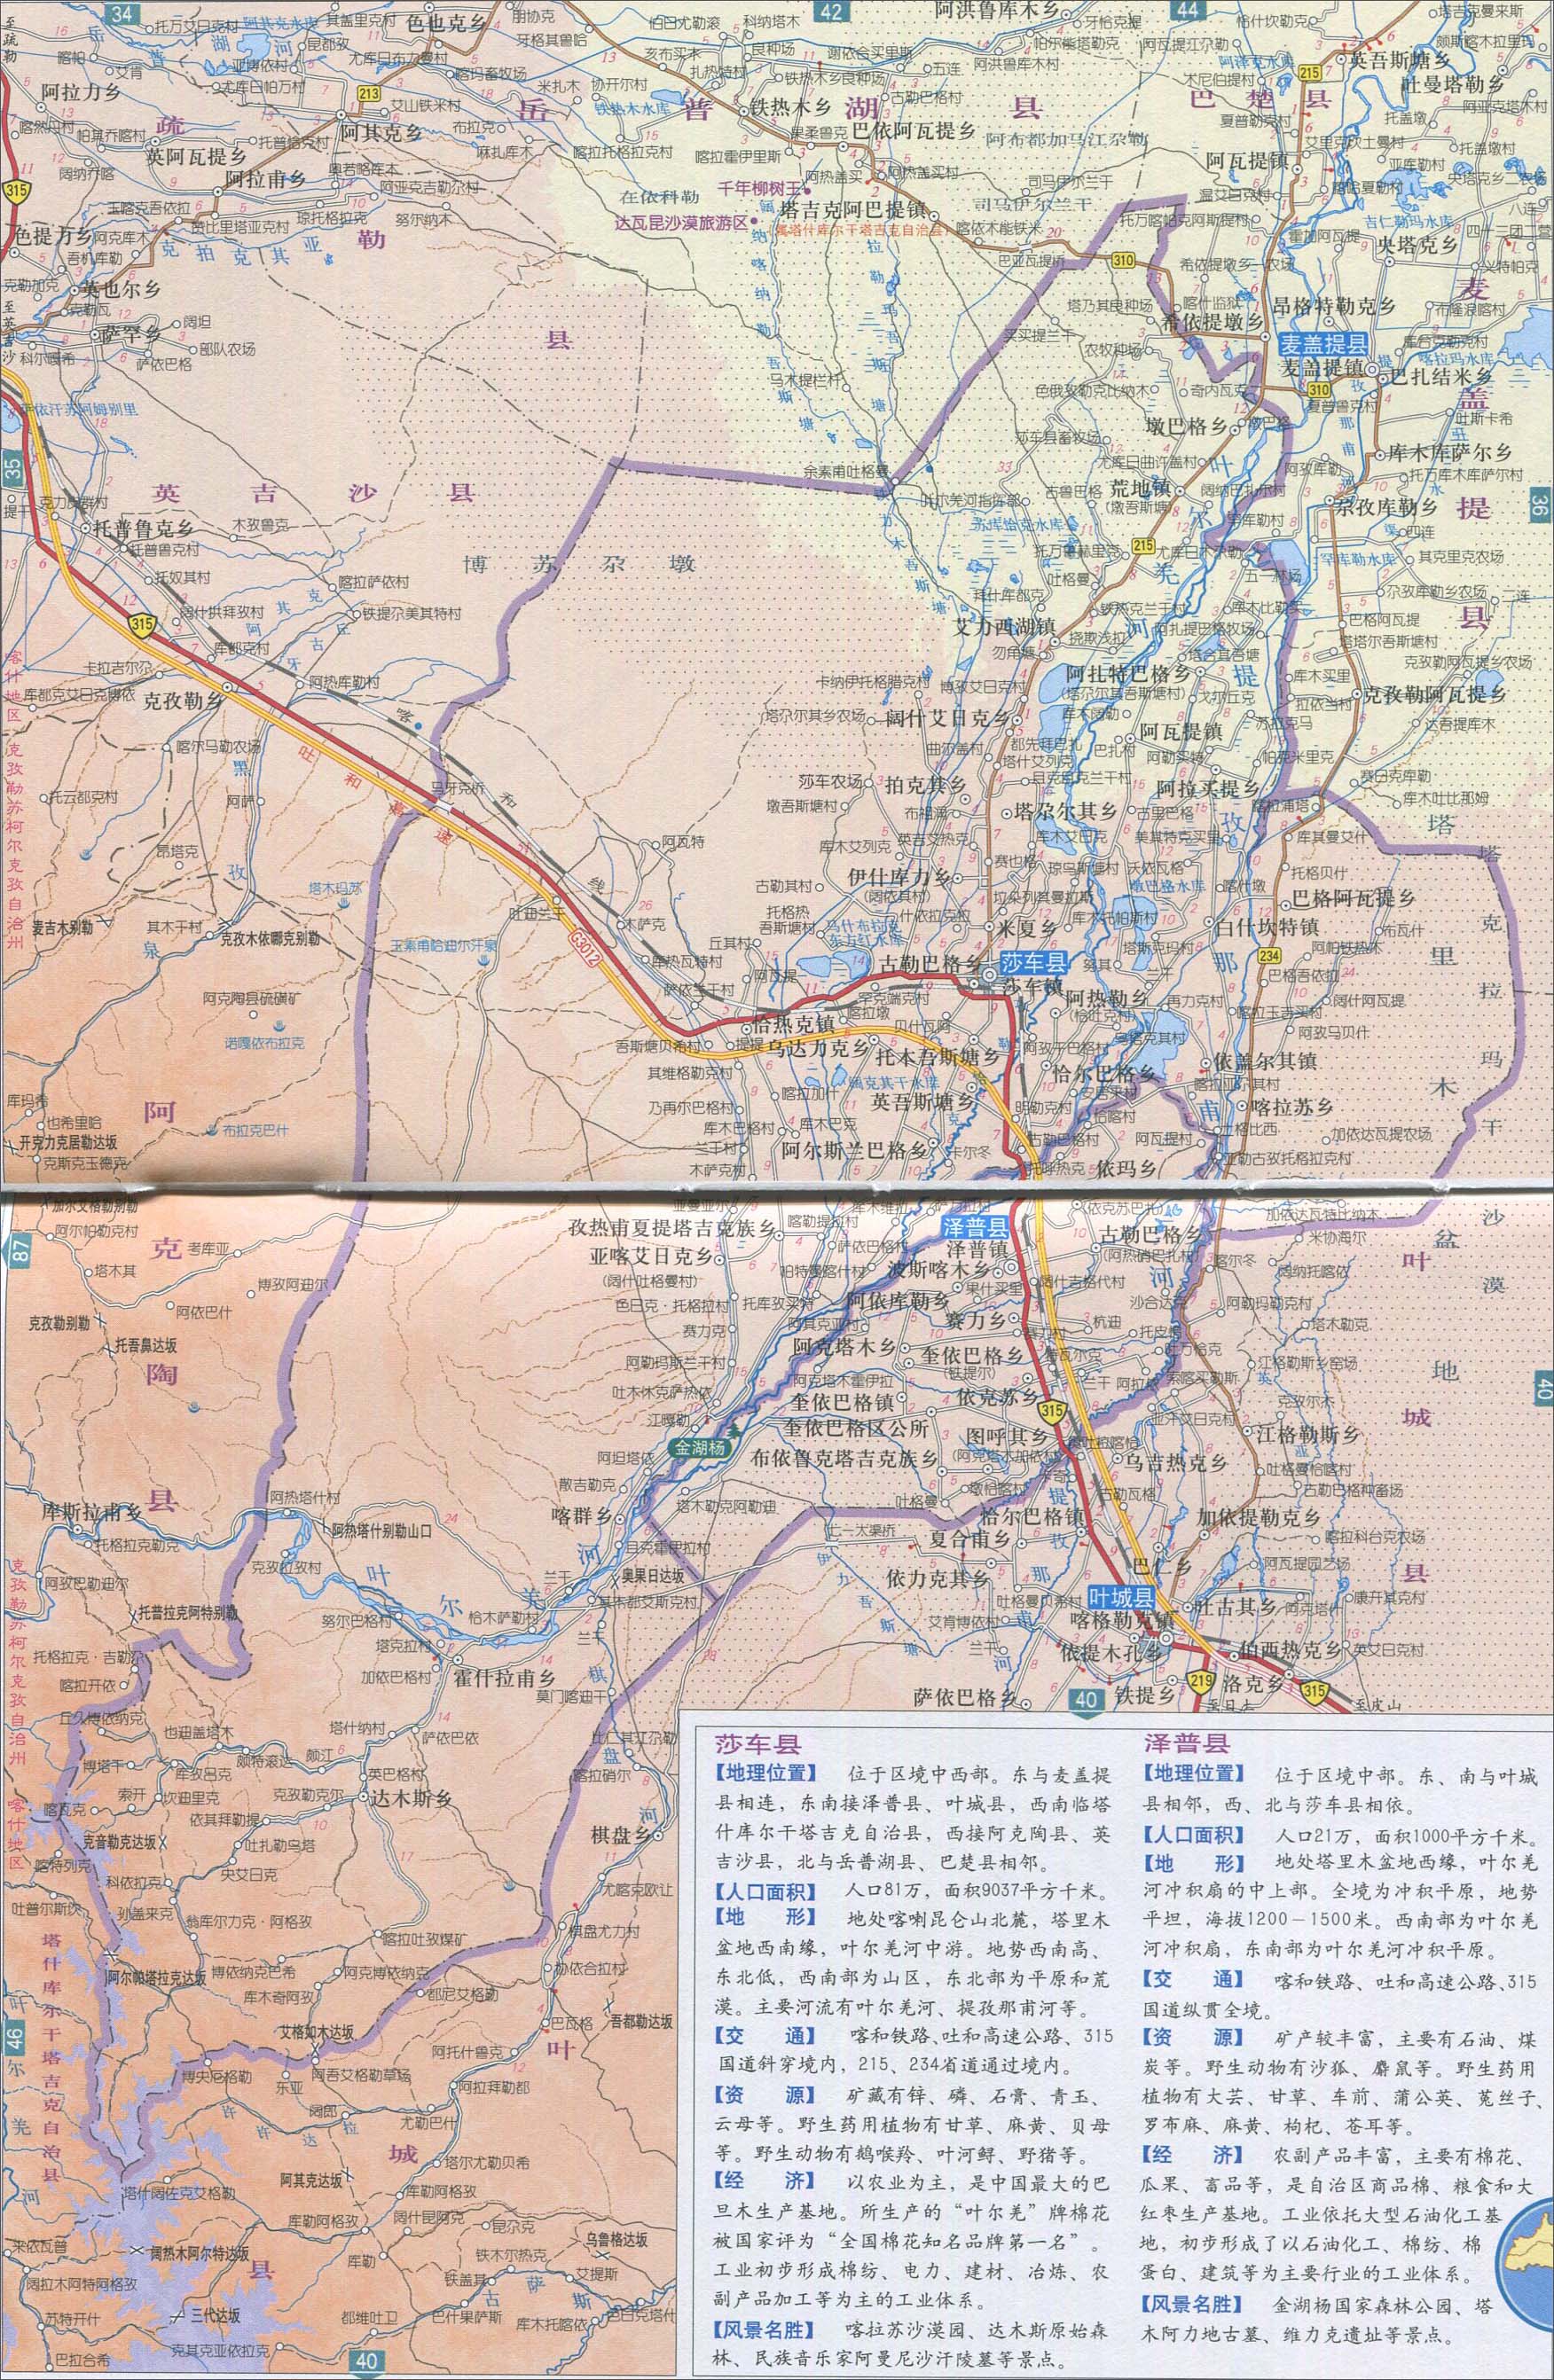 地理科考生和老师整理2014年的莎车县地图_泽普县地图,所处省份:喀什.